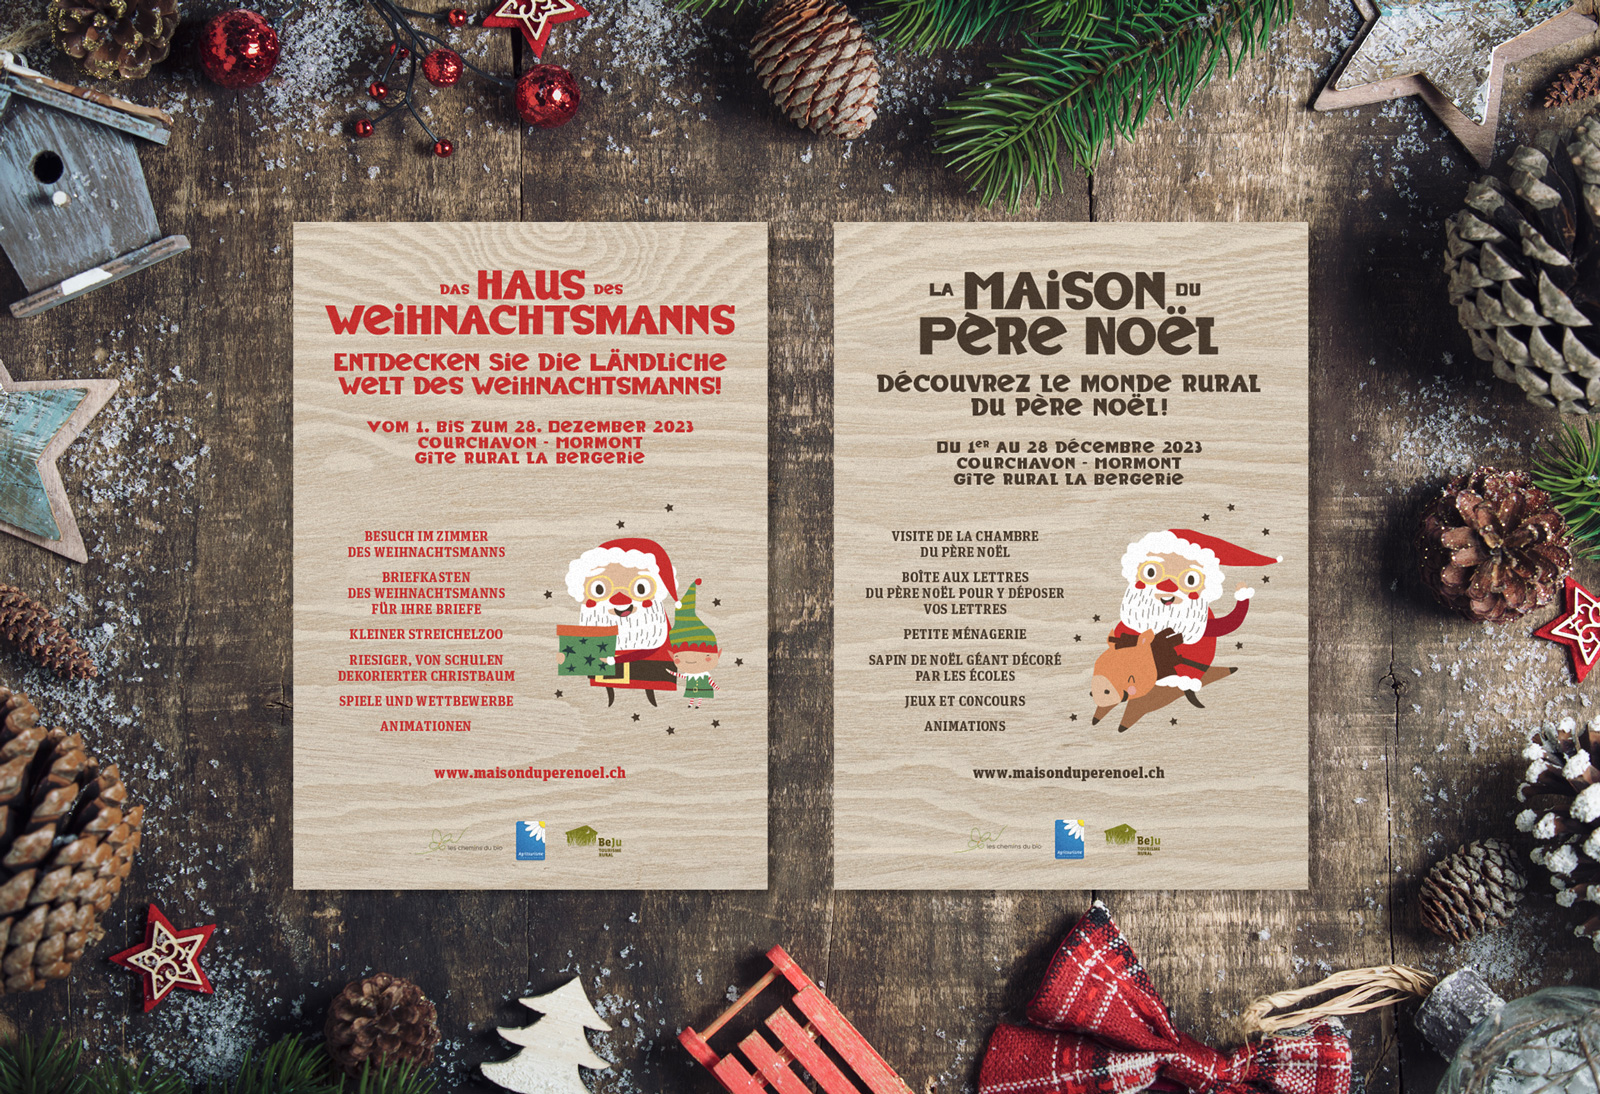 Identité visuelle et supports de communication pour l'évènement "La Maison du Père Noël", à Courchavon et Mormont, décembre 2023.